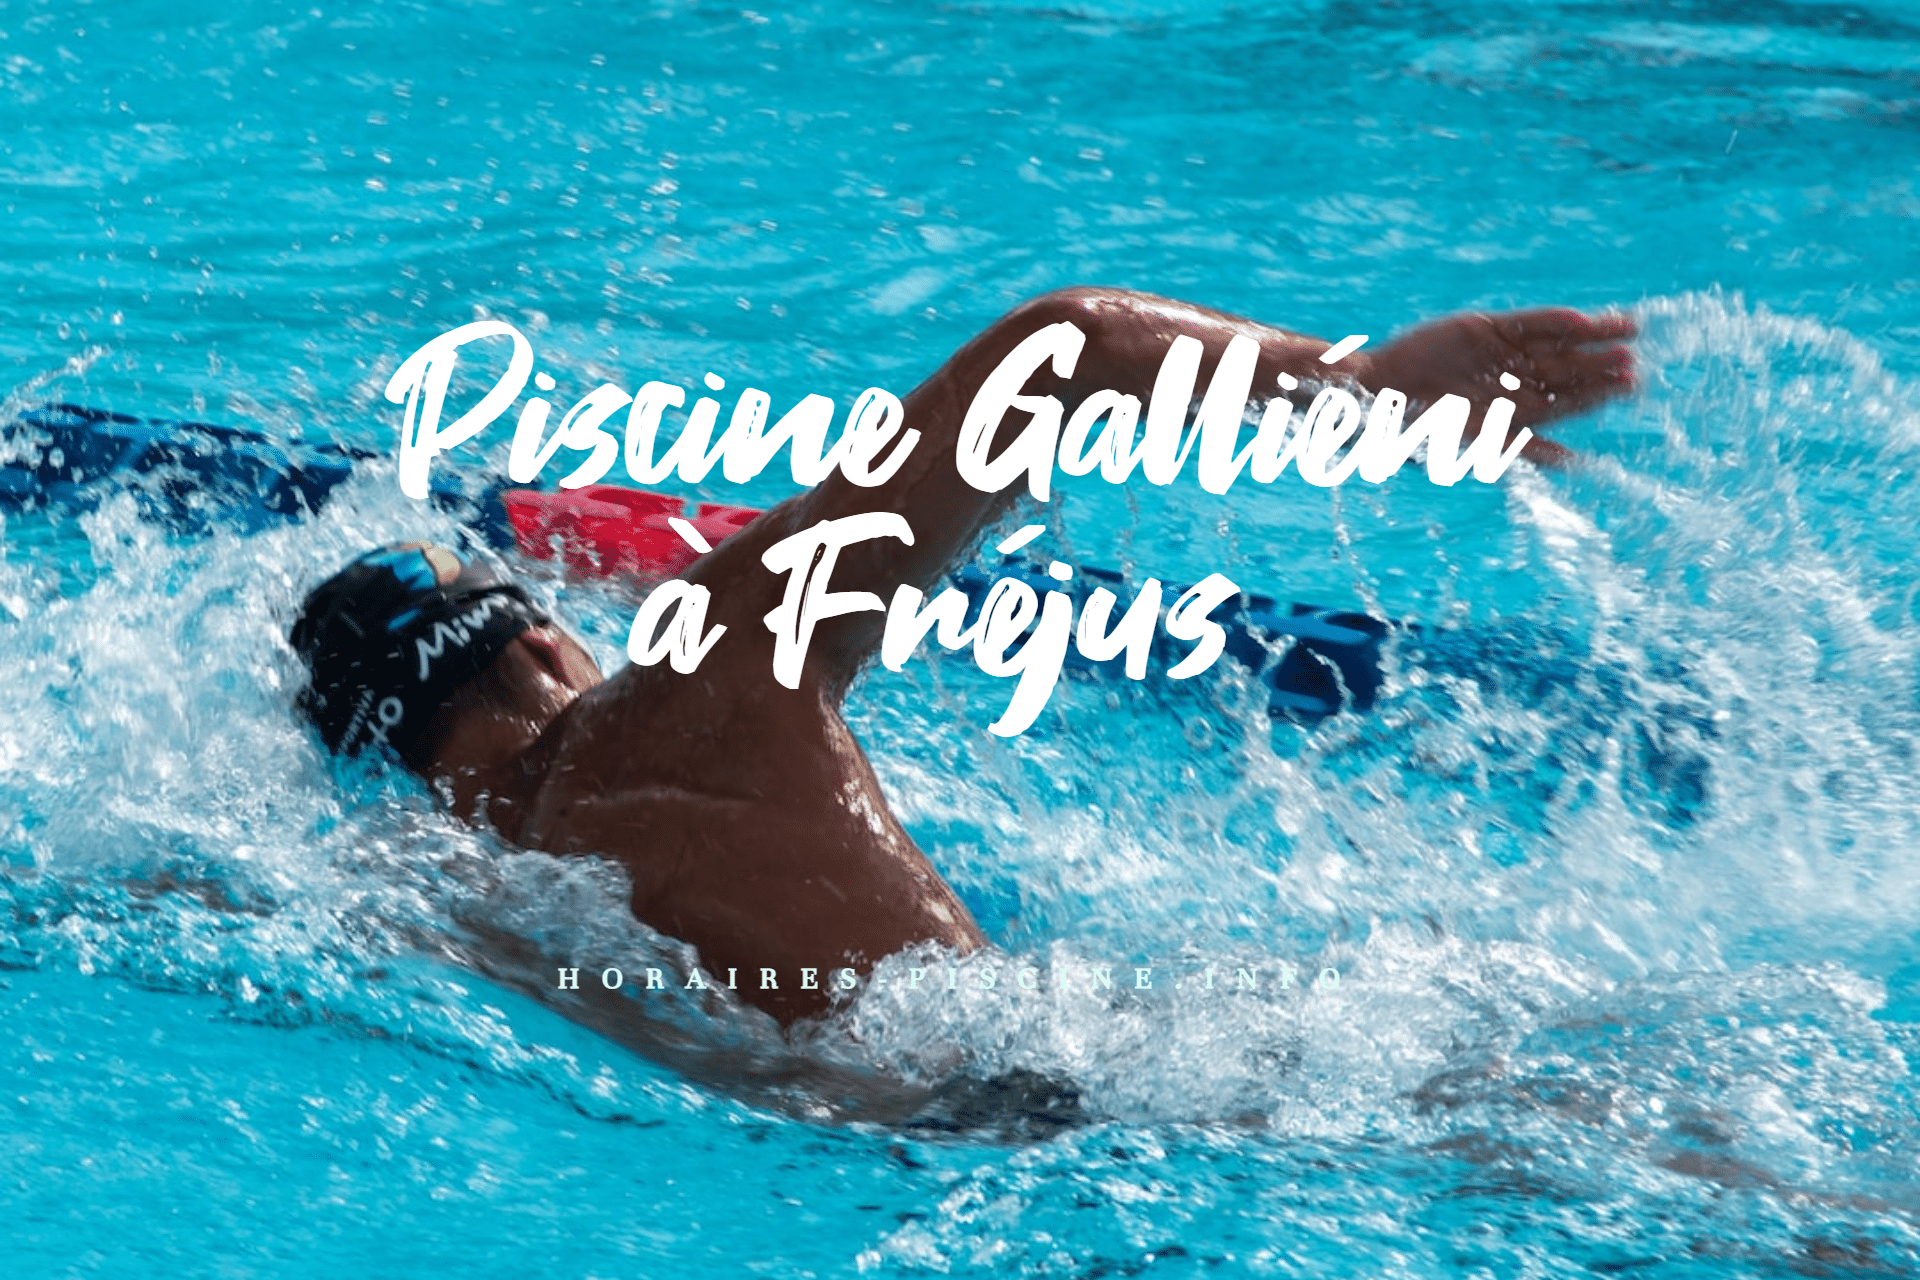 Piscine Galliéni à Fréjus